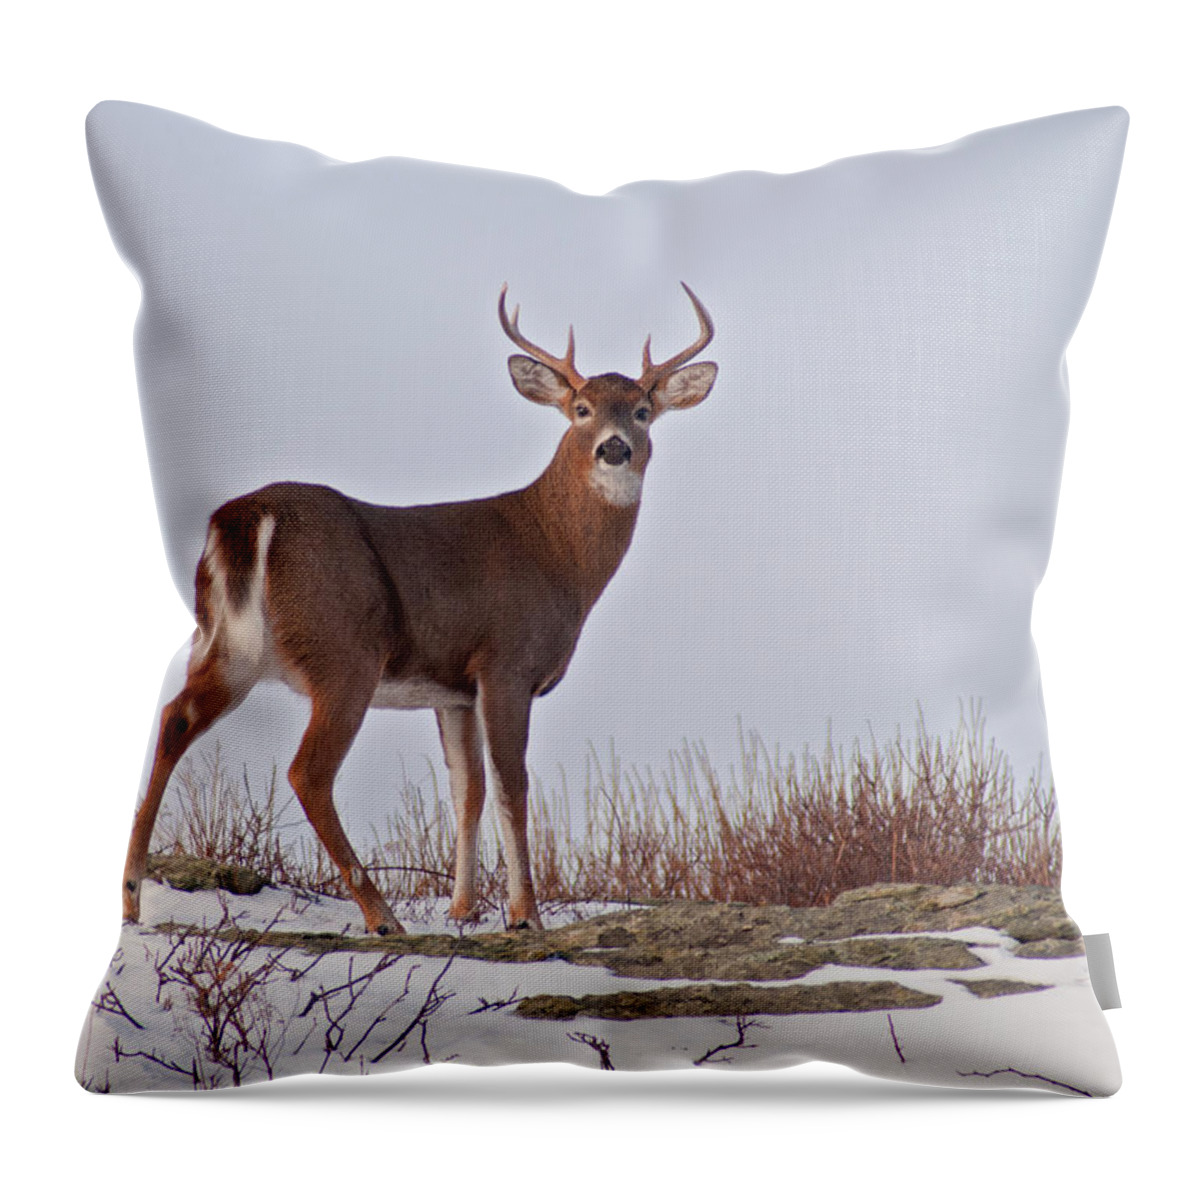 Newport Throw Pillow featuring the photograph The Watchful Deer by Nancy De Flon